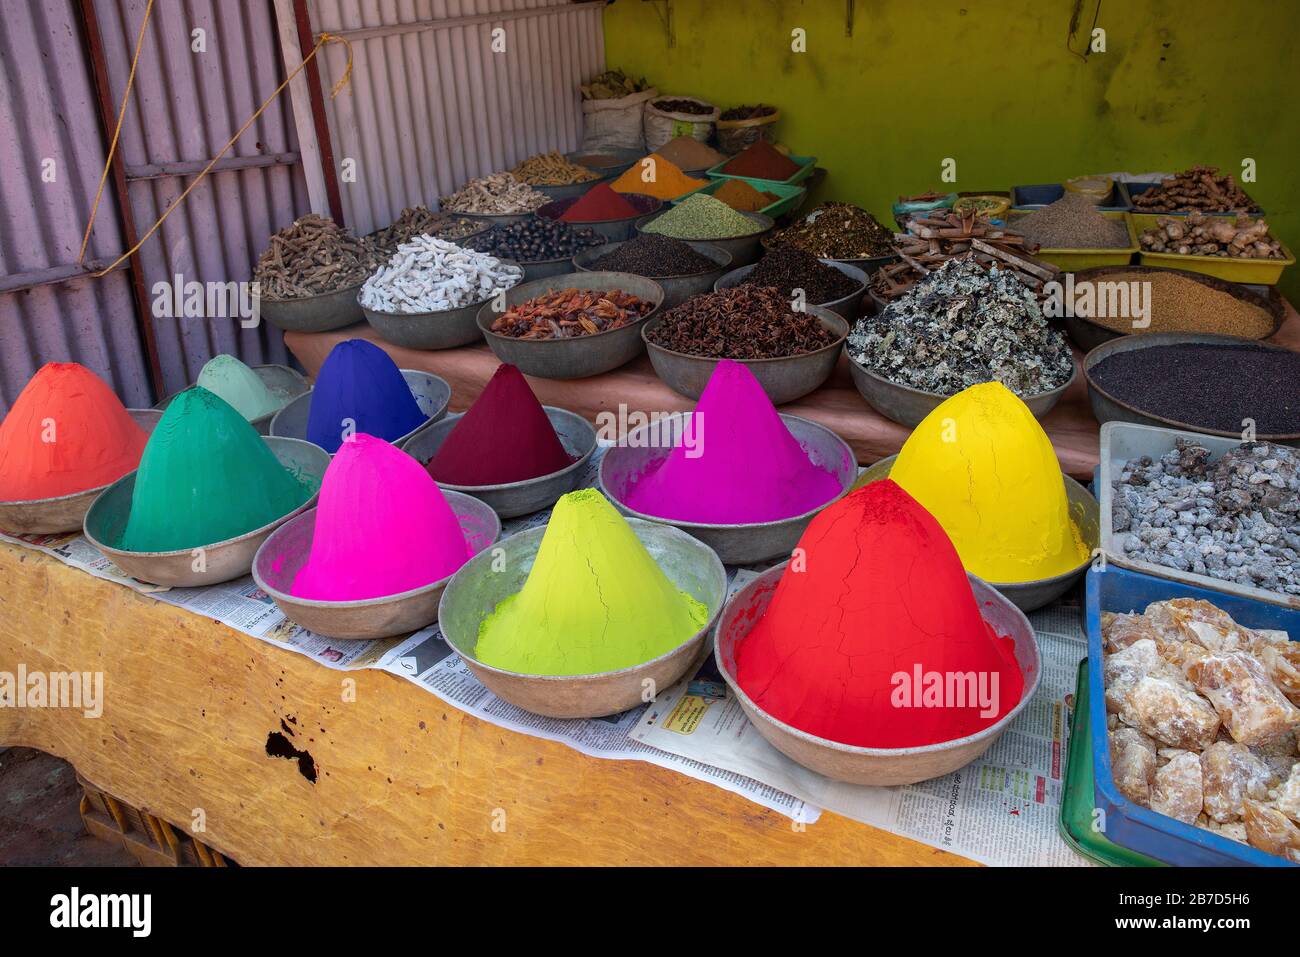 Dipingere di colori diversi e alcuni beni (cannella e ecc) sullo sfondo in un piccolo negozio sulla strada Foto Stock